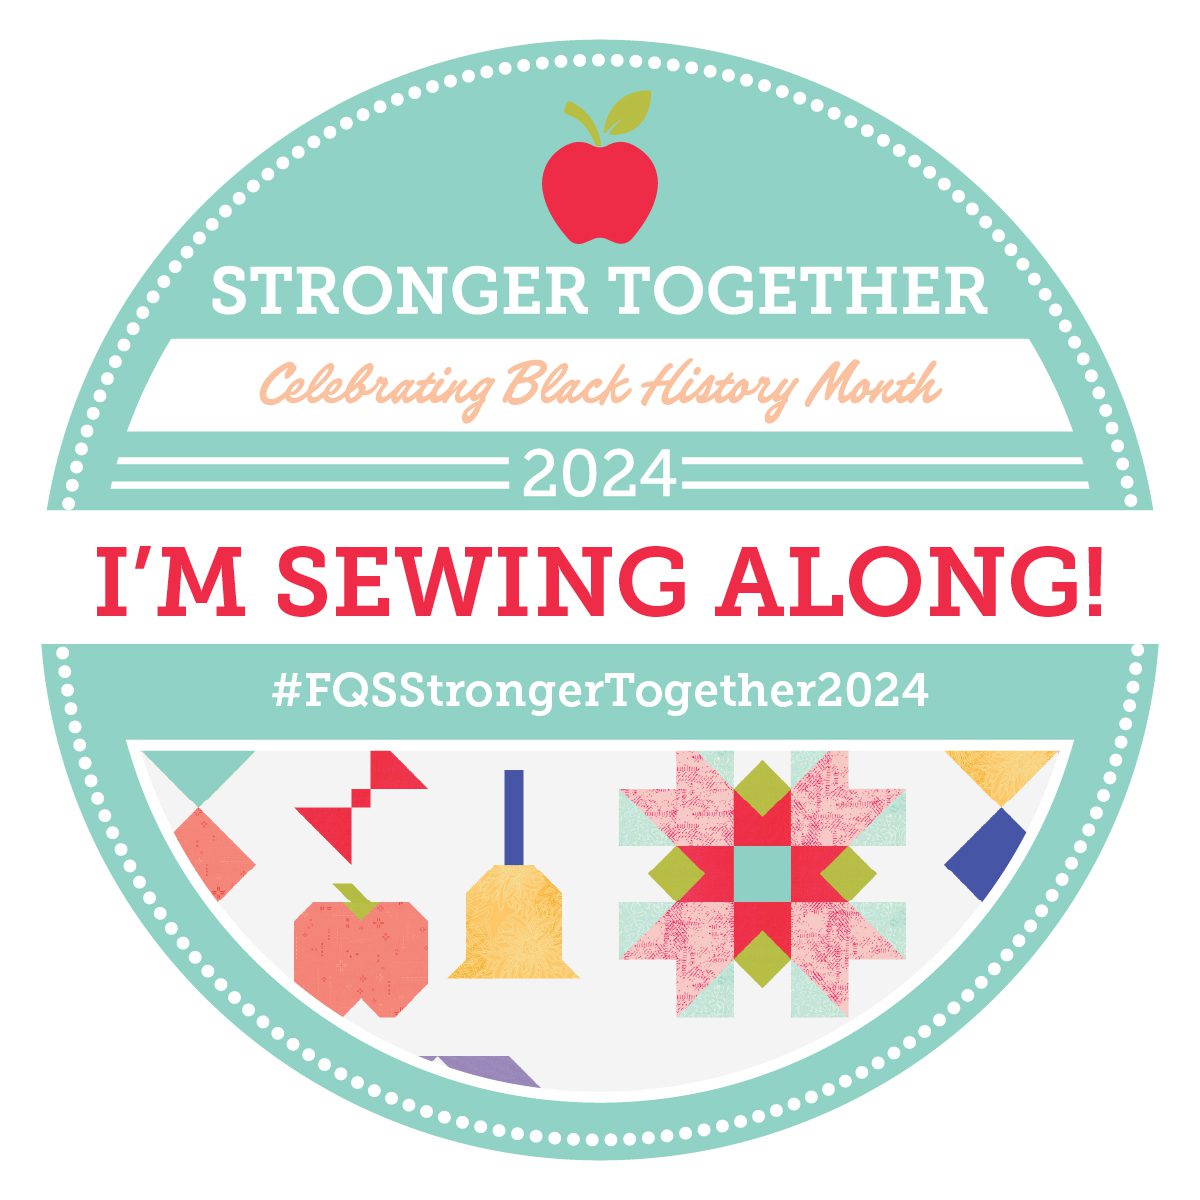 Stronger together | Celebrating Black History Month | I'm sewing along| #FQSStringerTogether2024